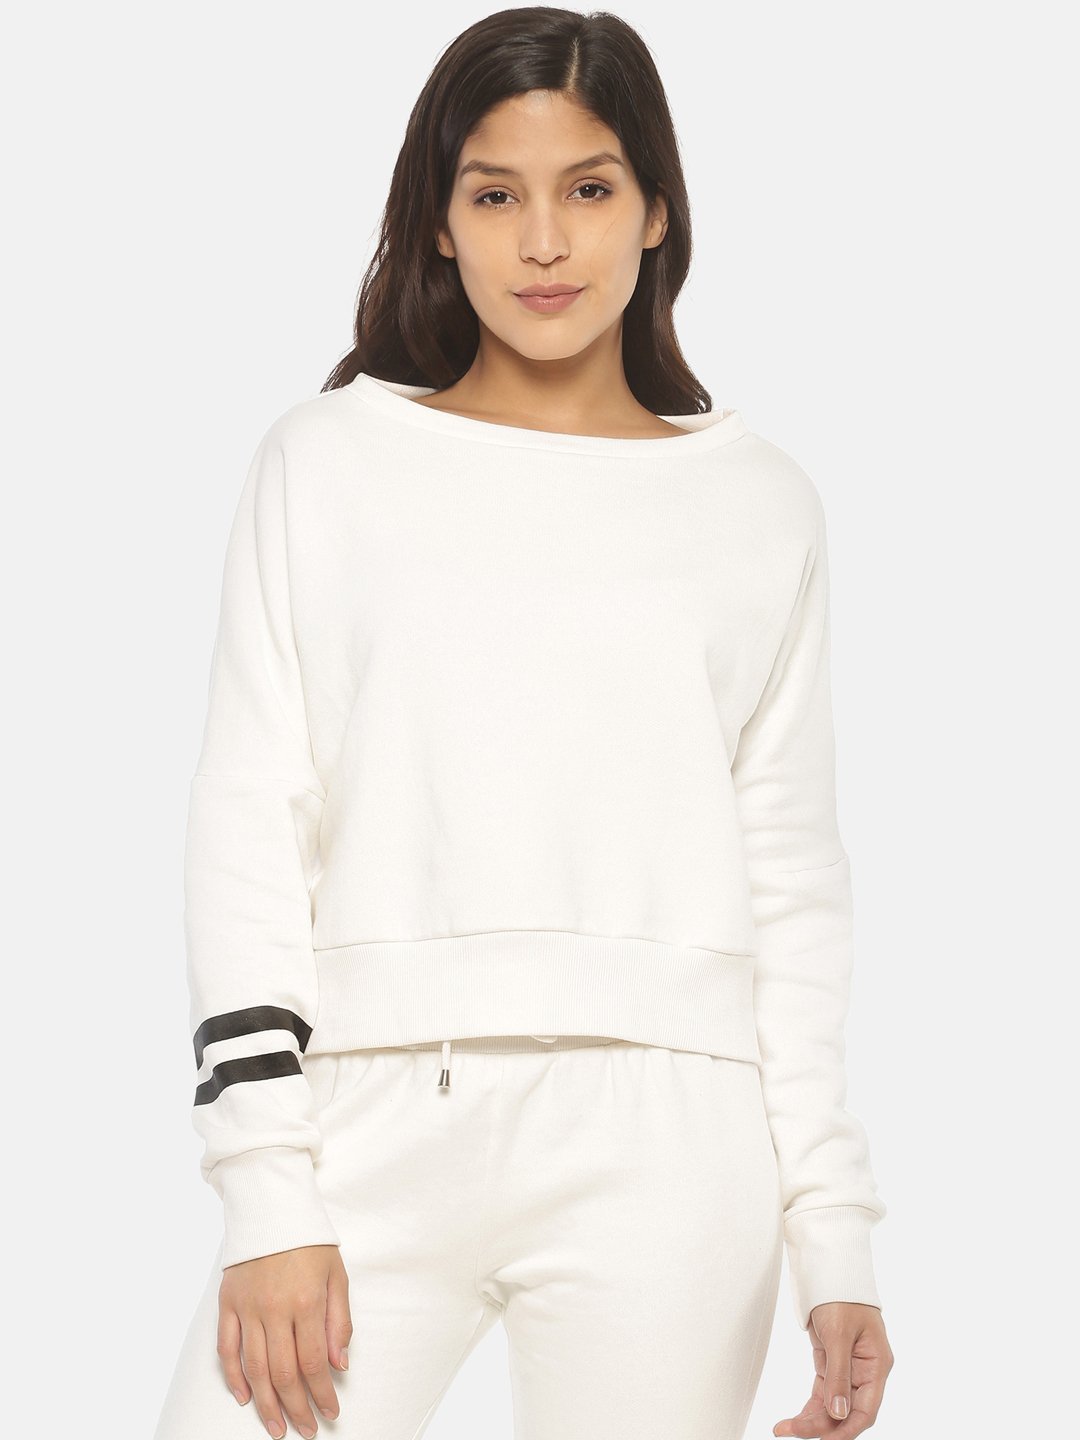 IS.U White Oversized Sweatshirt